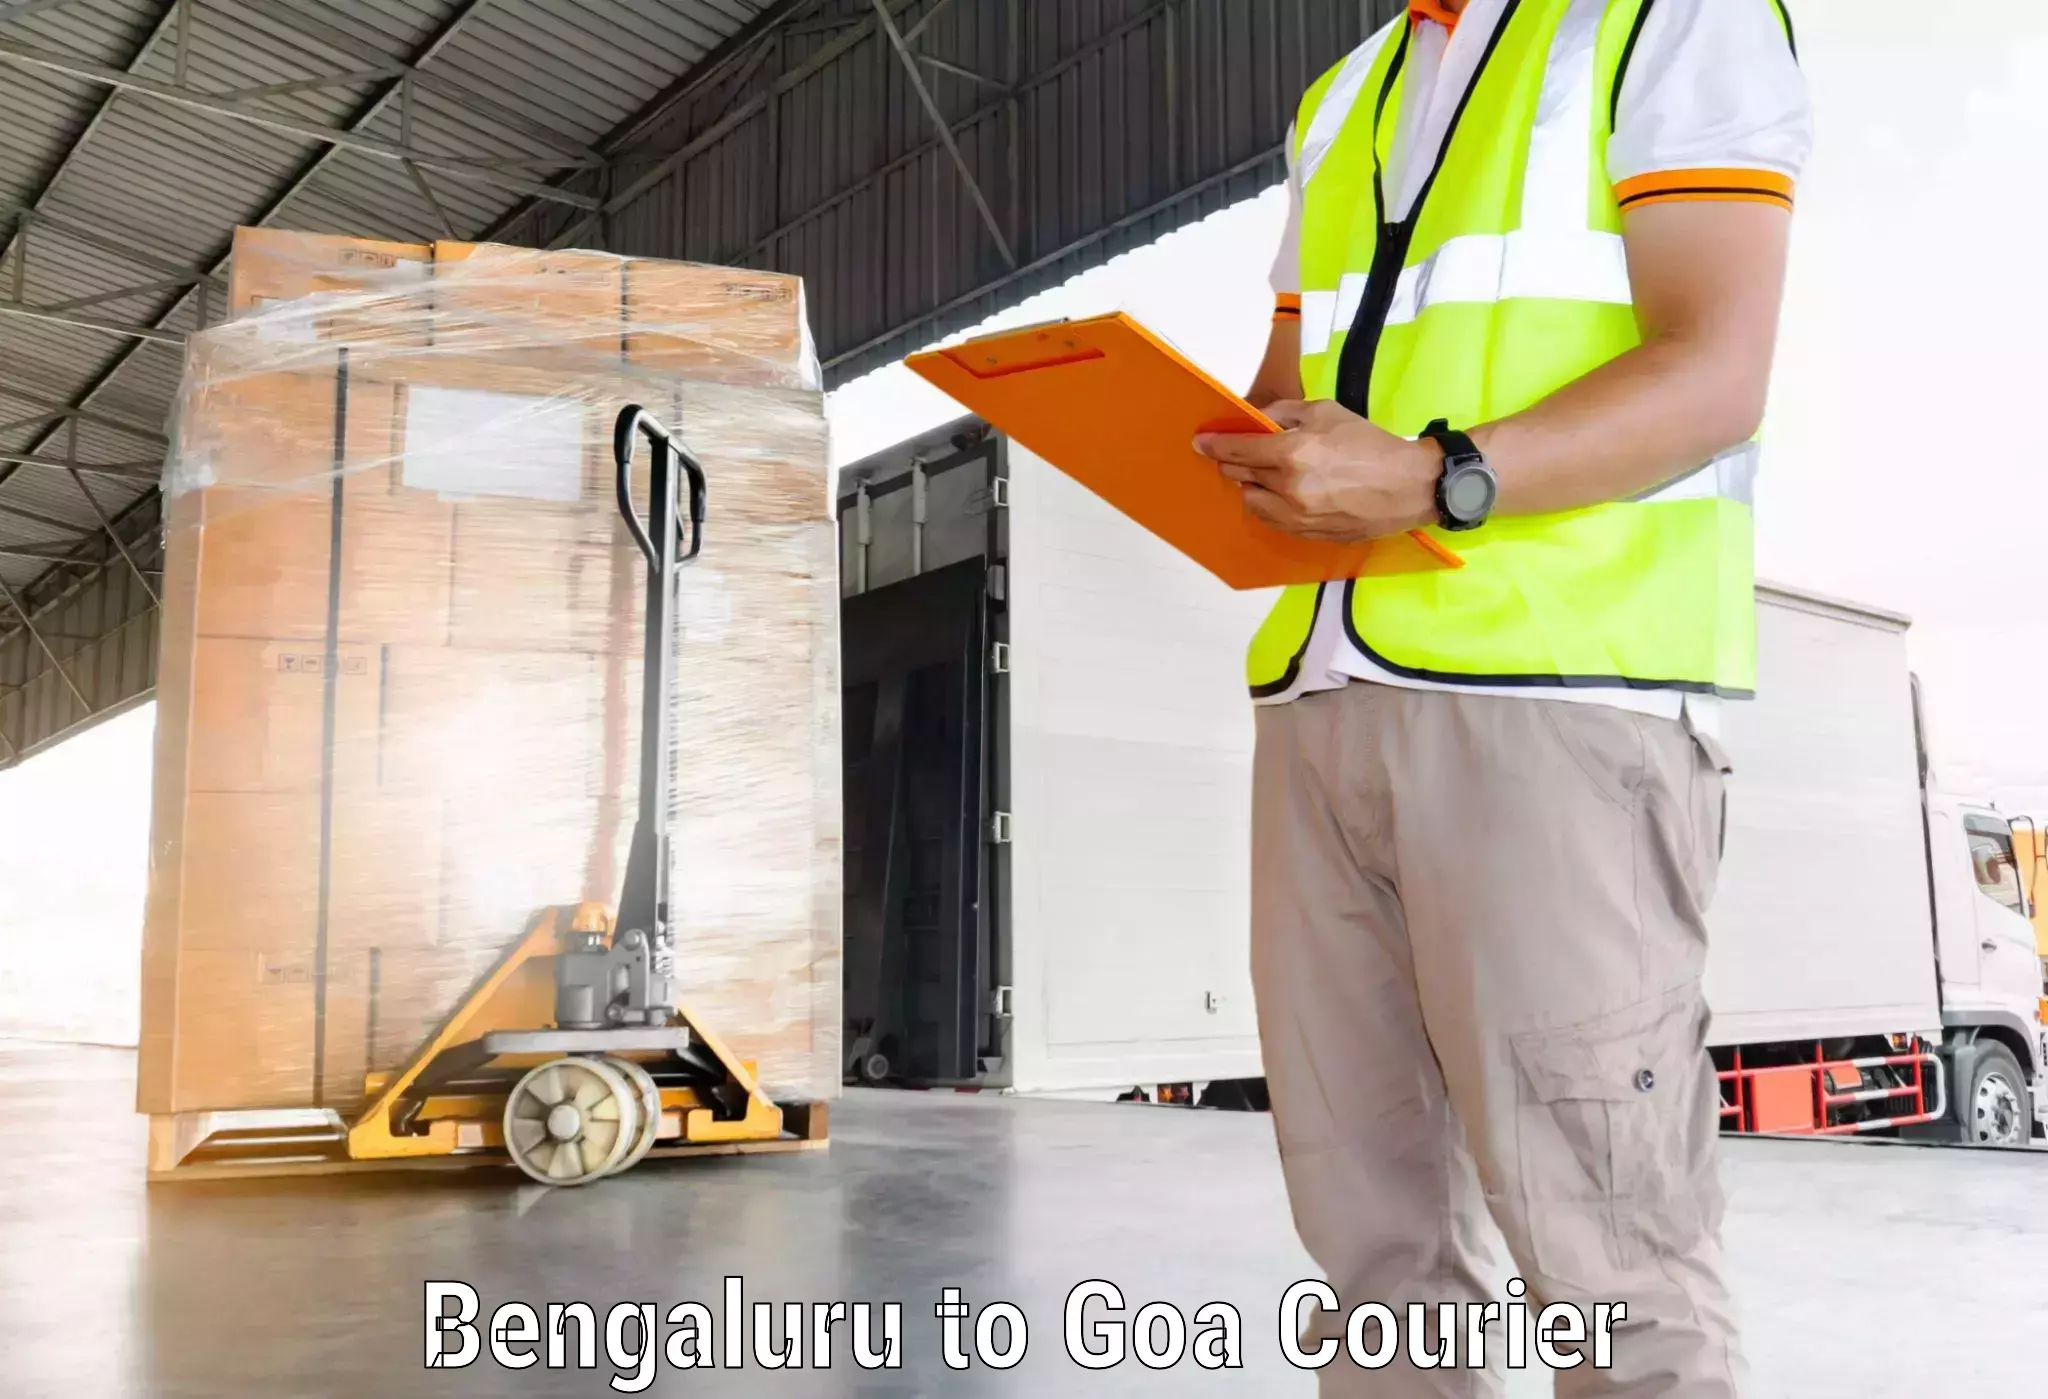 Efficient order fulfillment Bengaluru to Goa